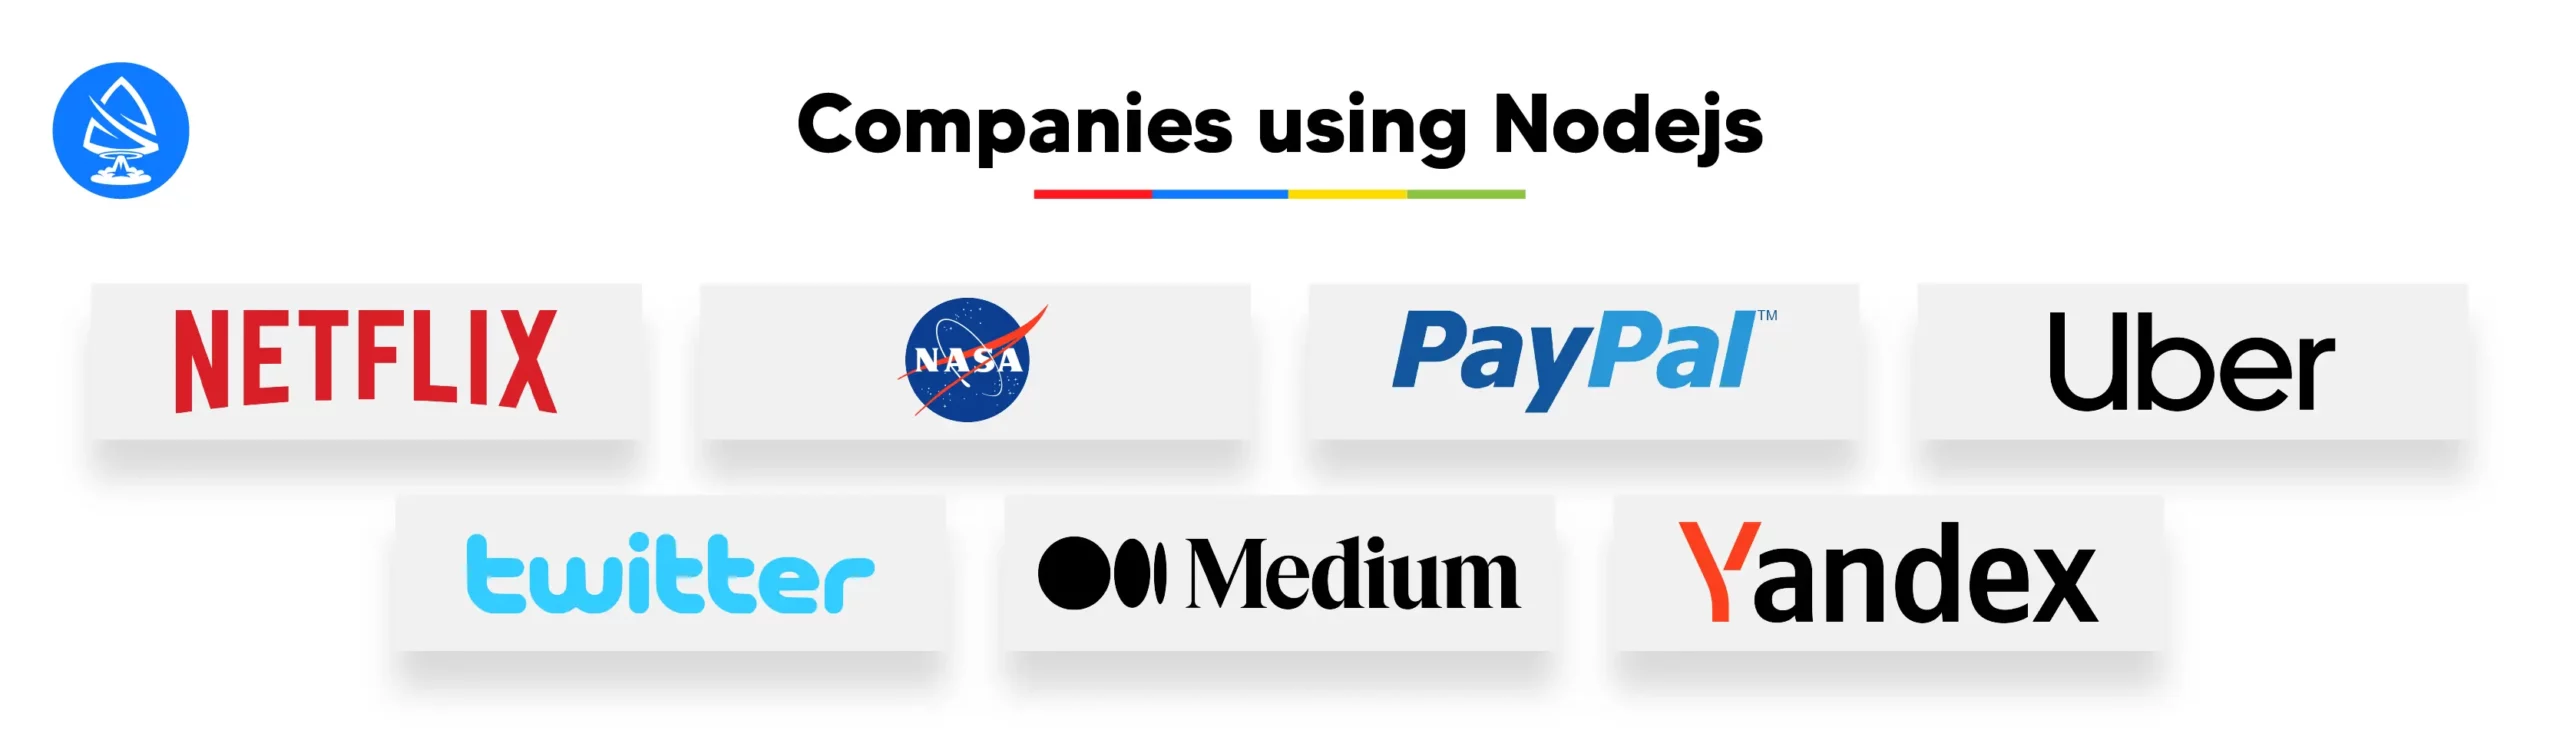 Companies Using Nodejs 